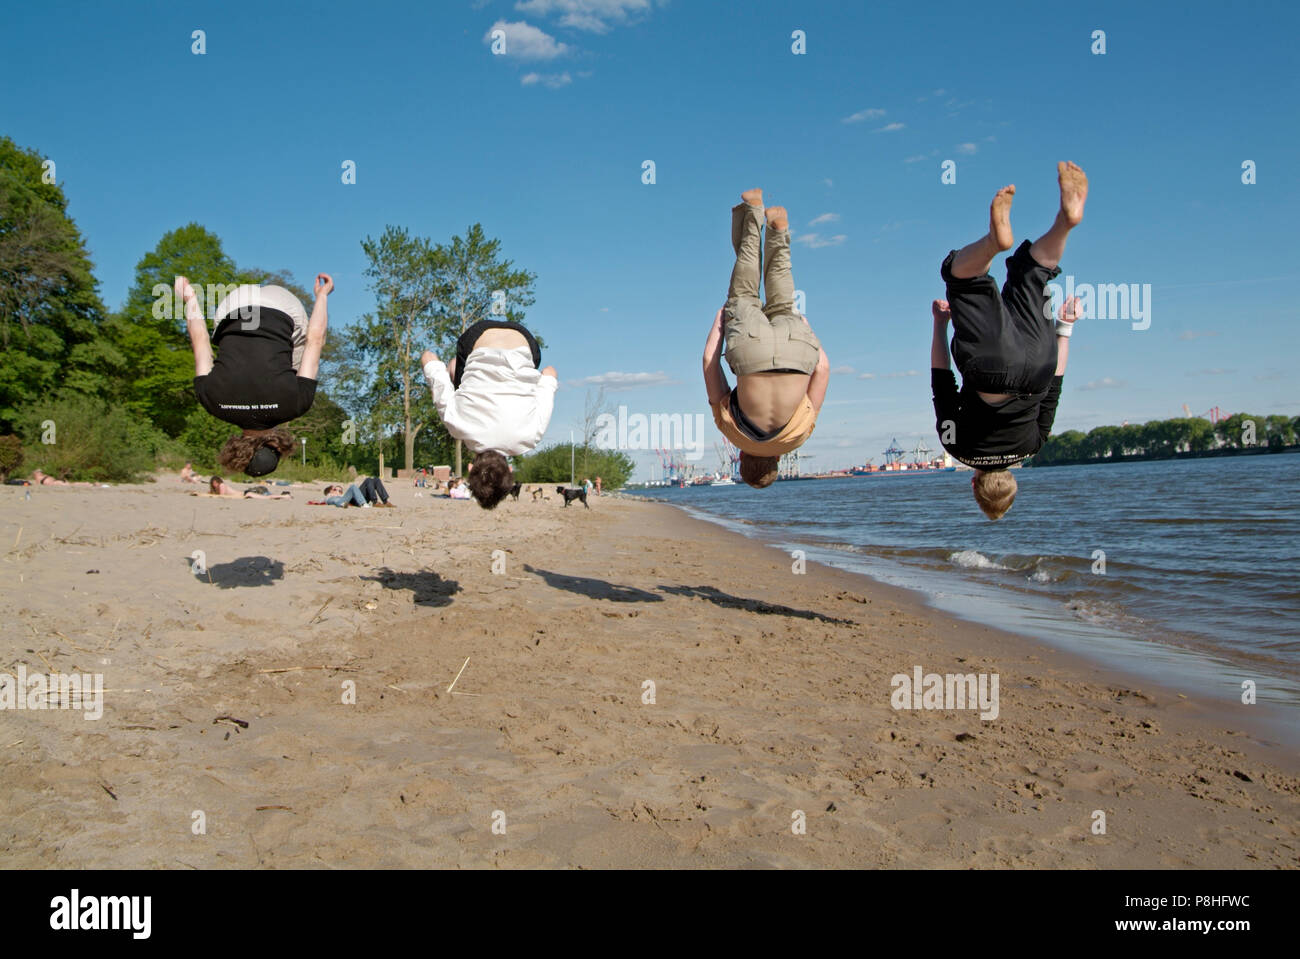 Vier junge Maenner trainieren gemeinsam ihren Rueckwarts-Salto am Hamburger Elbe-Strand in Oevelgoenne. Foto Stock